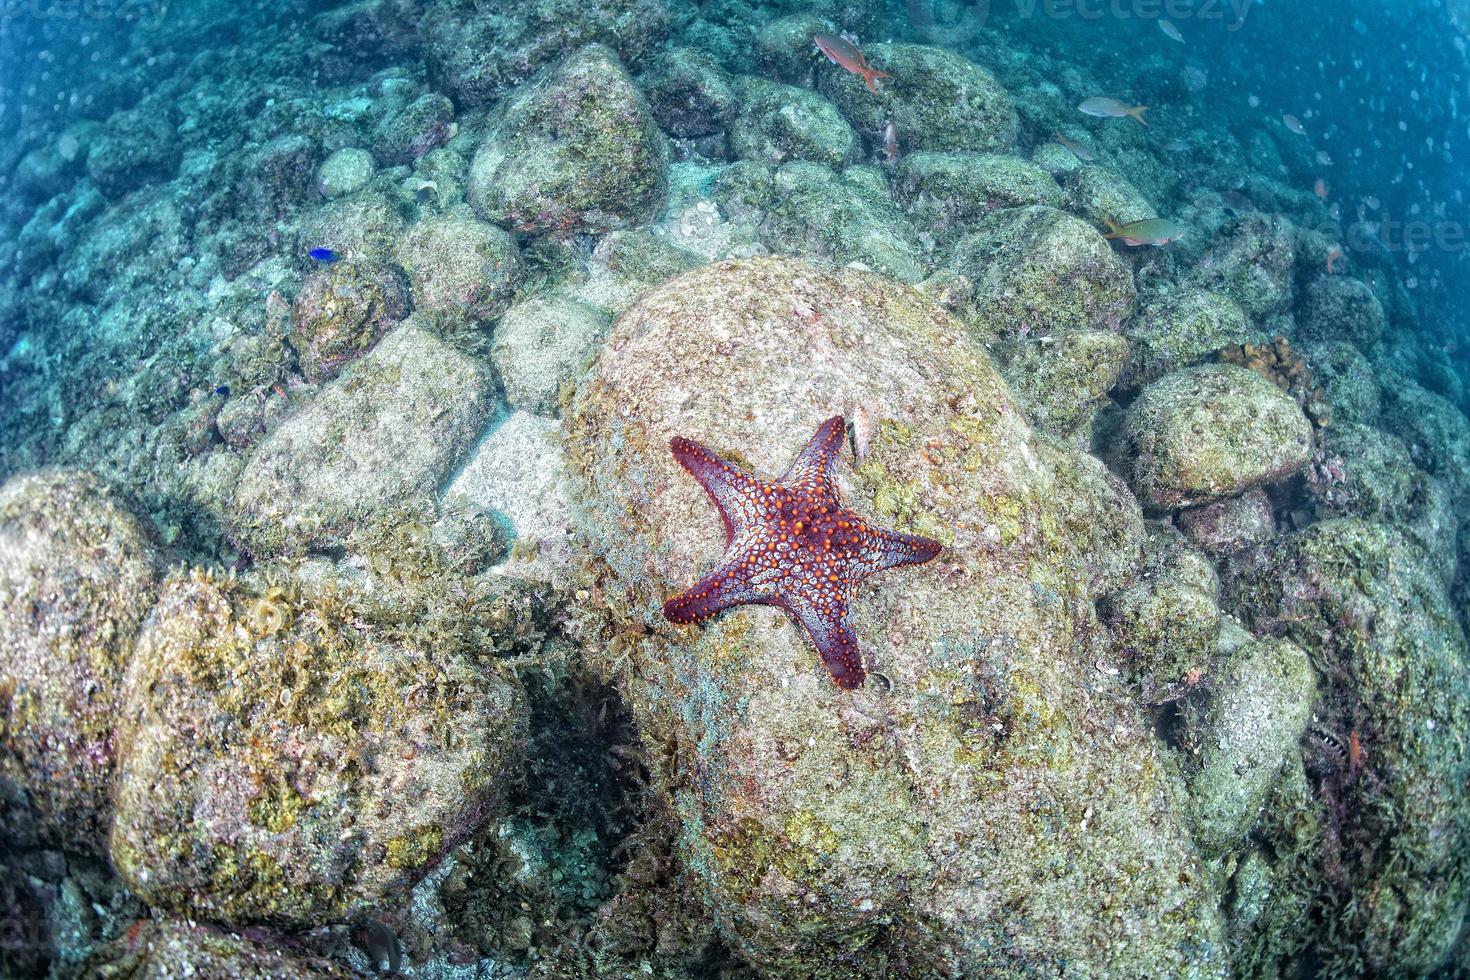 étoiles de mer dans un paysage sous-marin coloré de récif photo